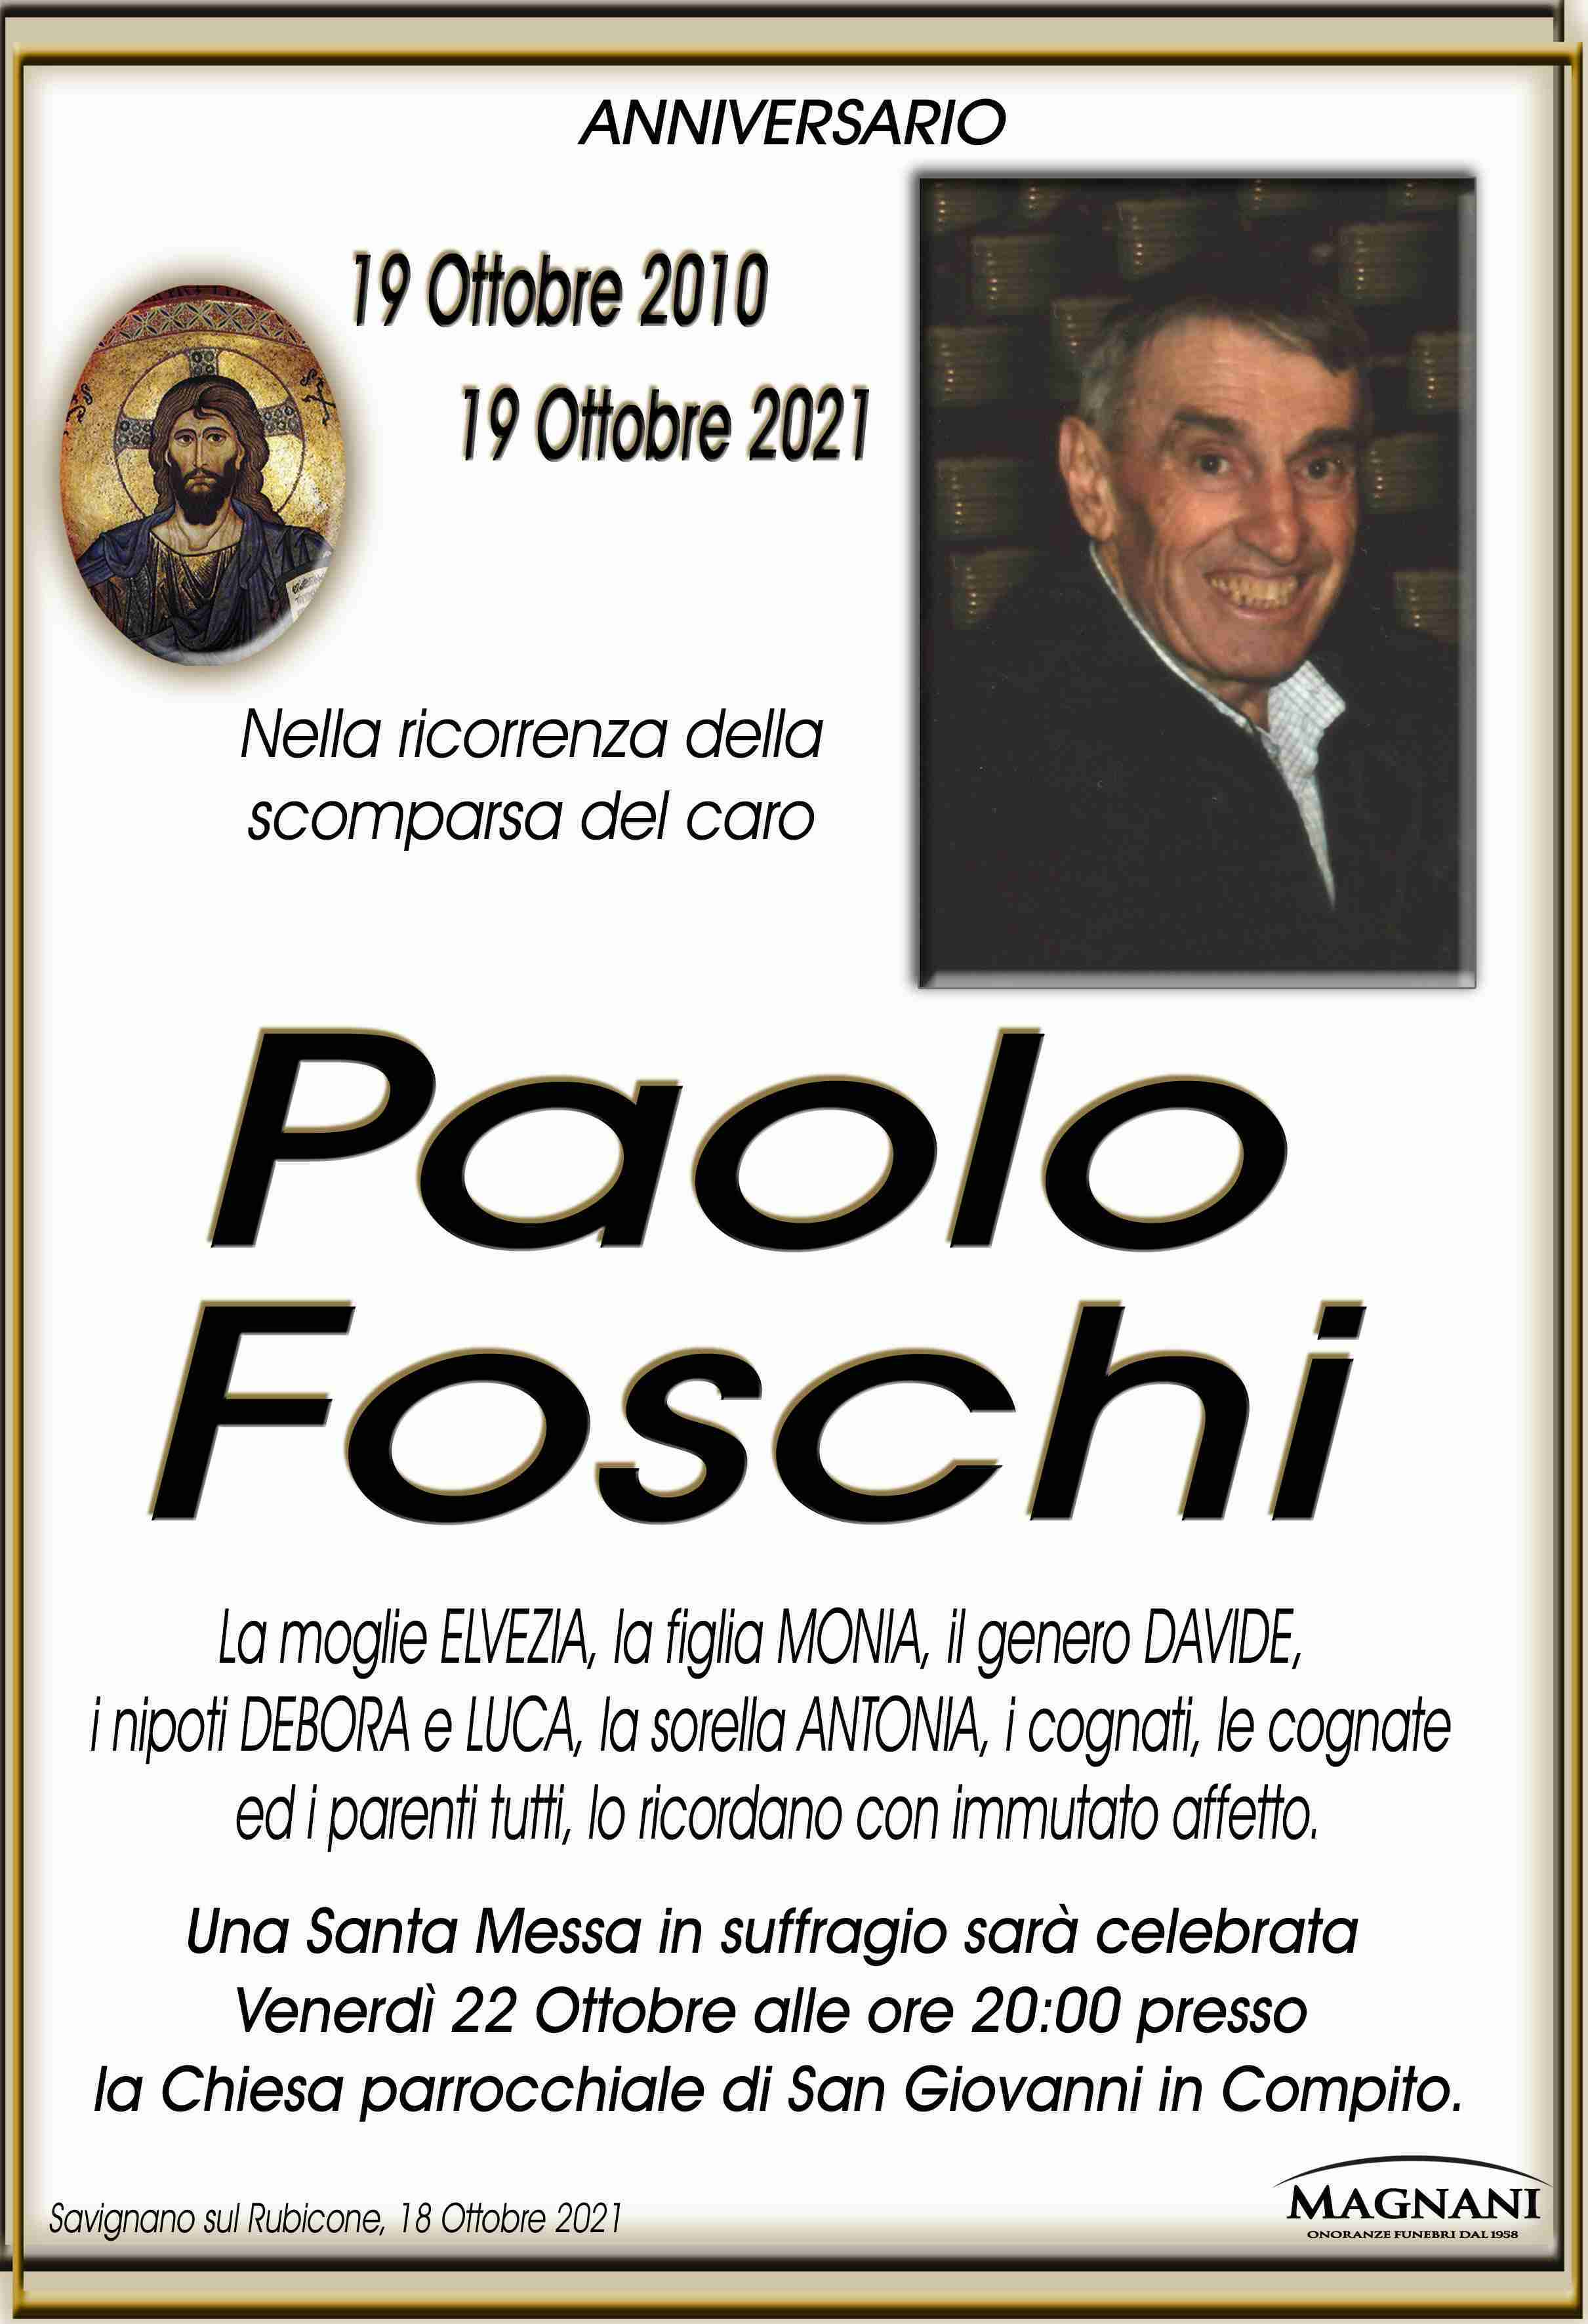 Paolo Foschi